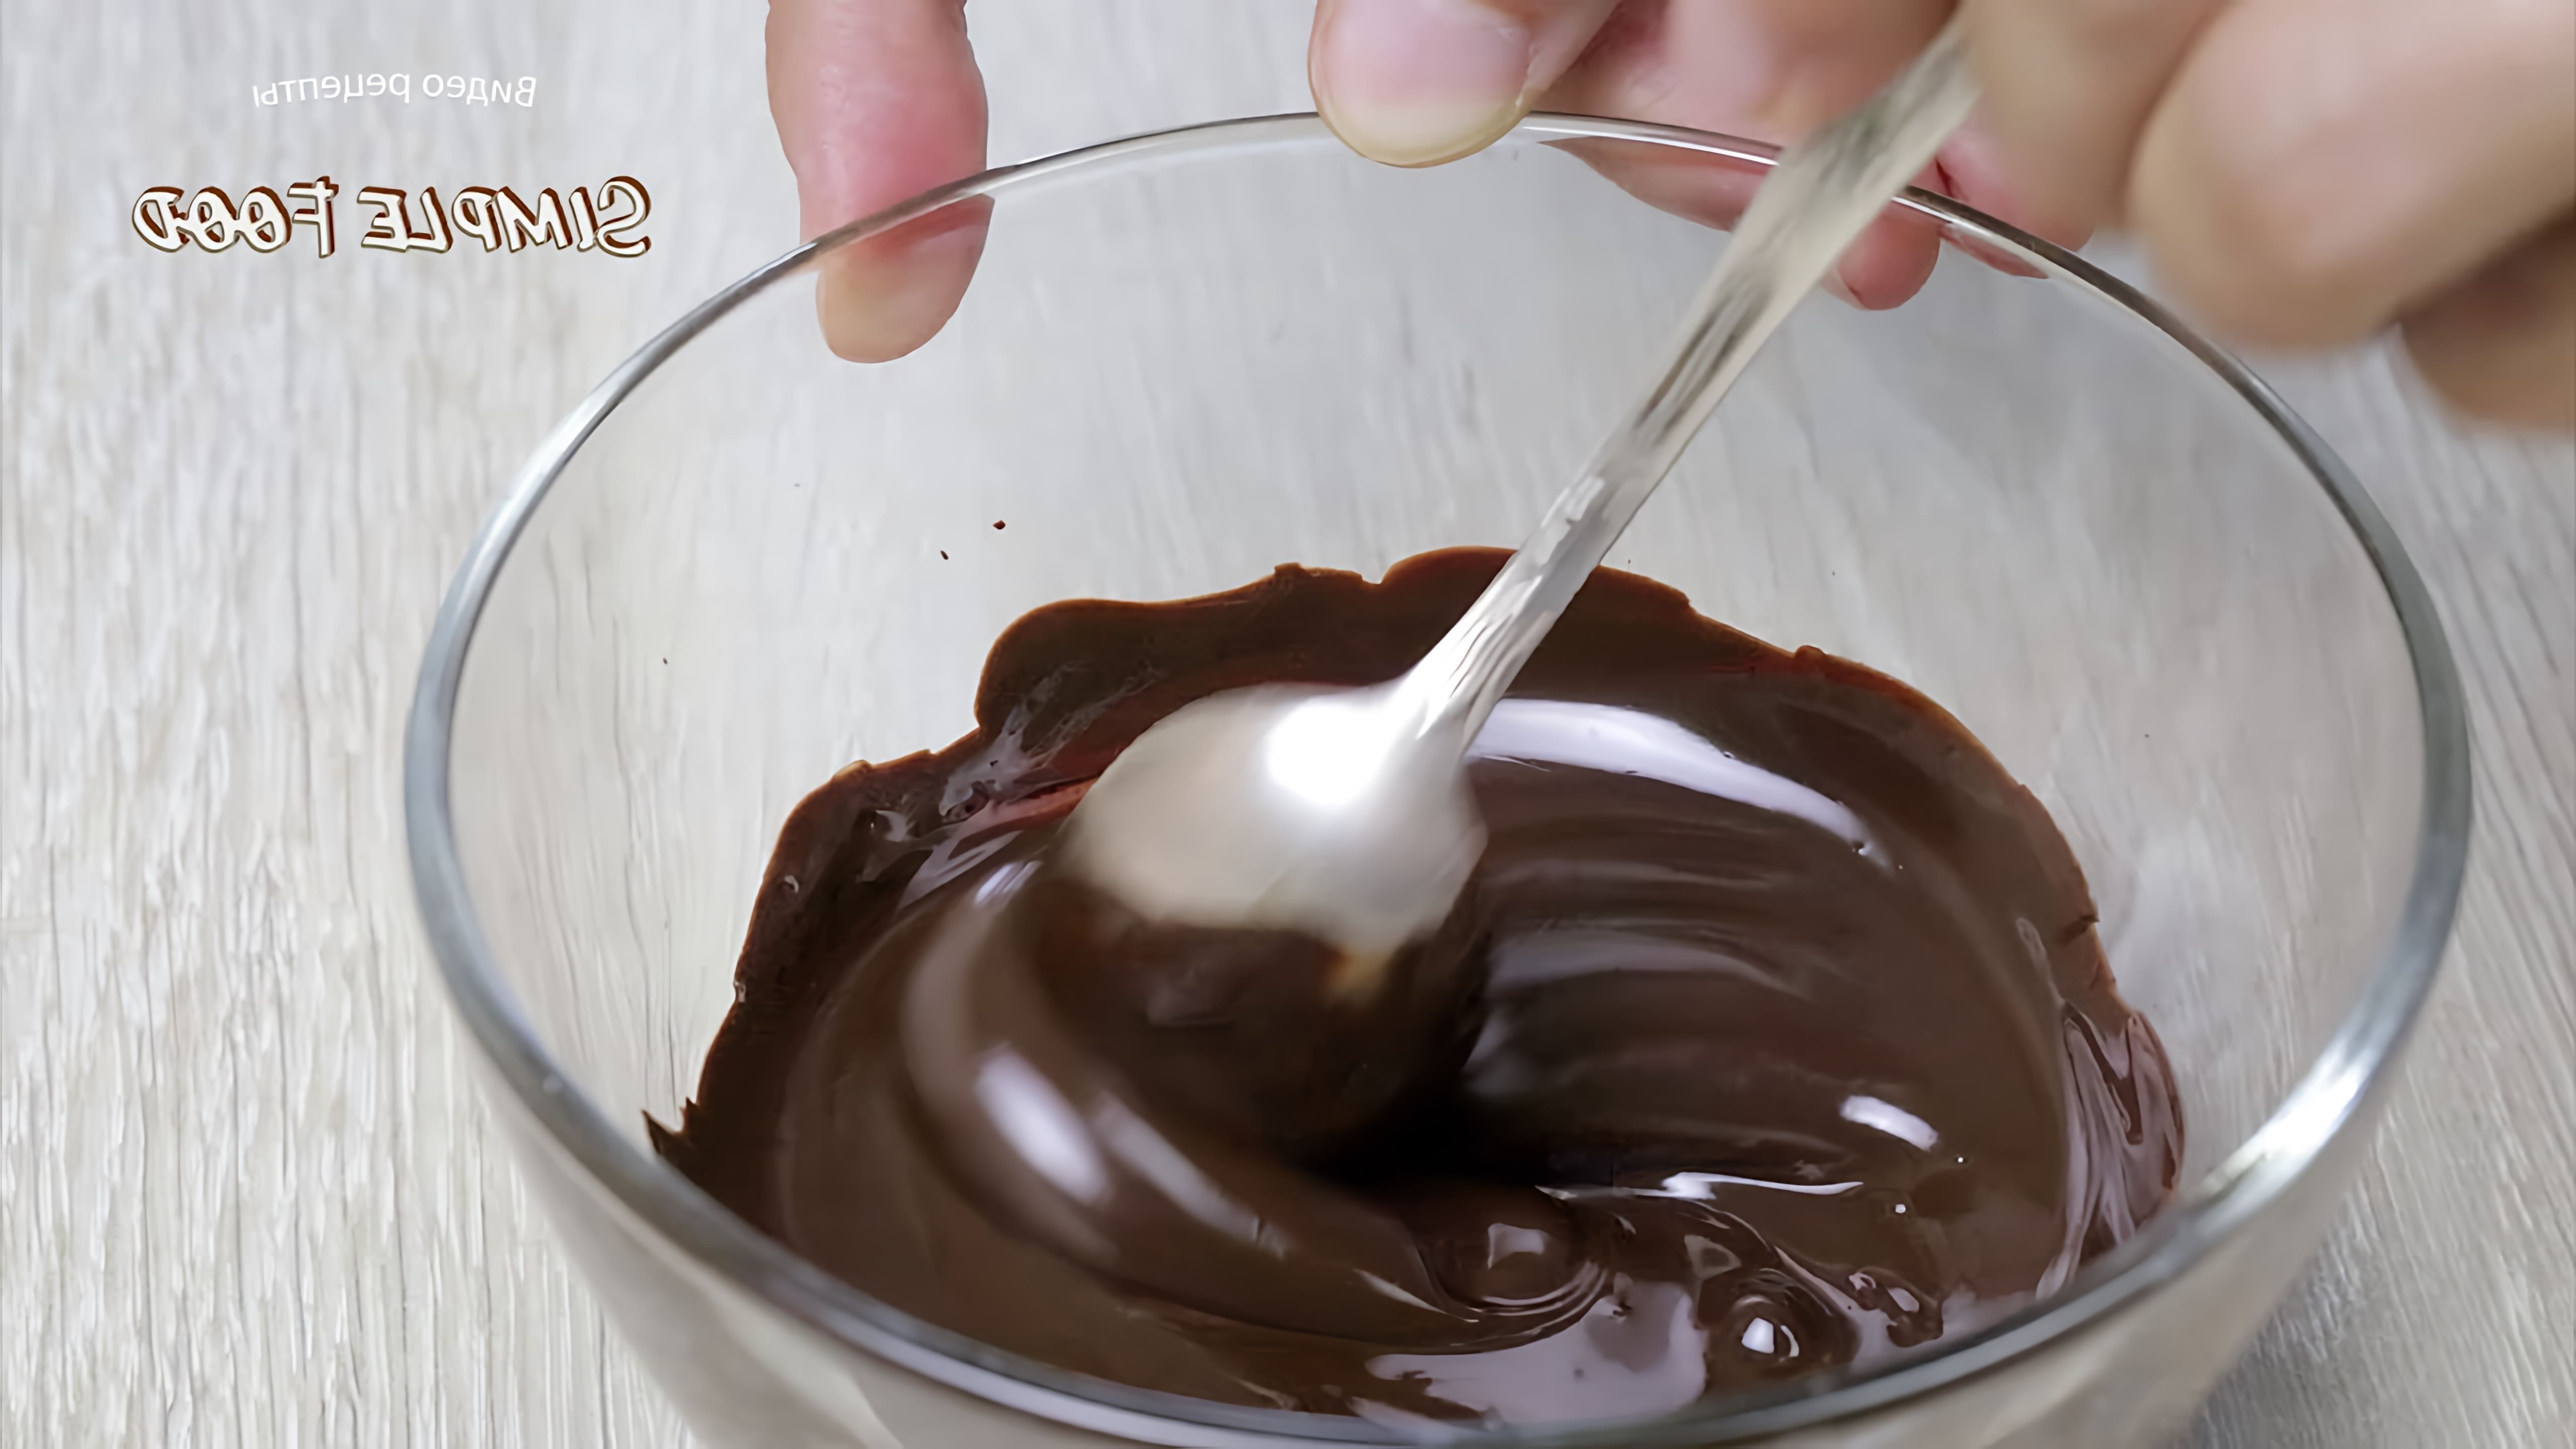 В этом видео демонстрируется рецепт приготовления домашних шоколадных трюфелей